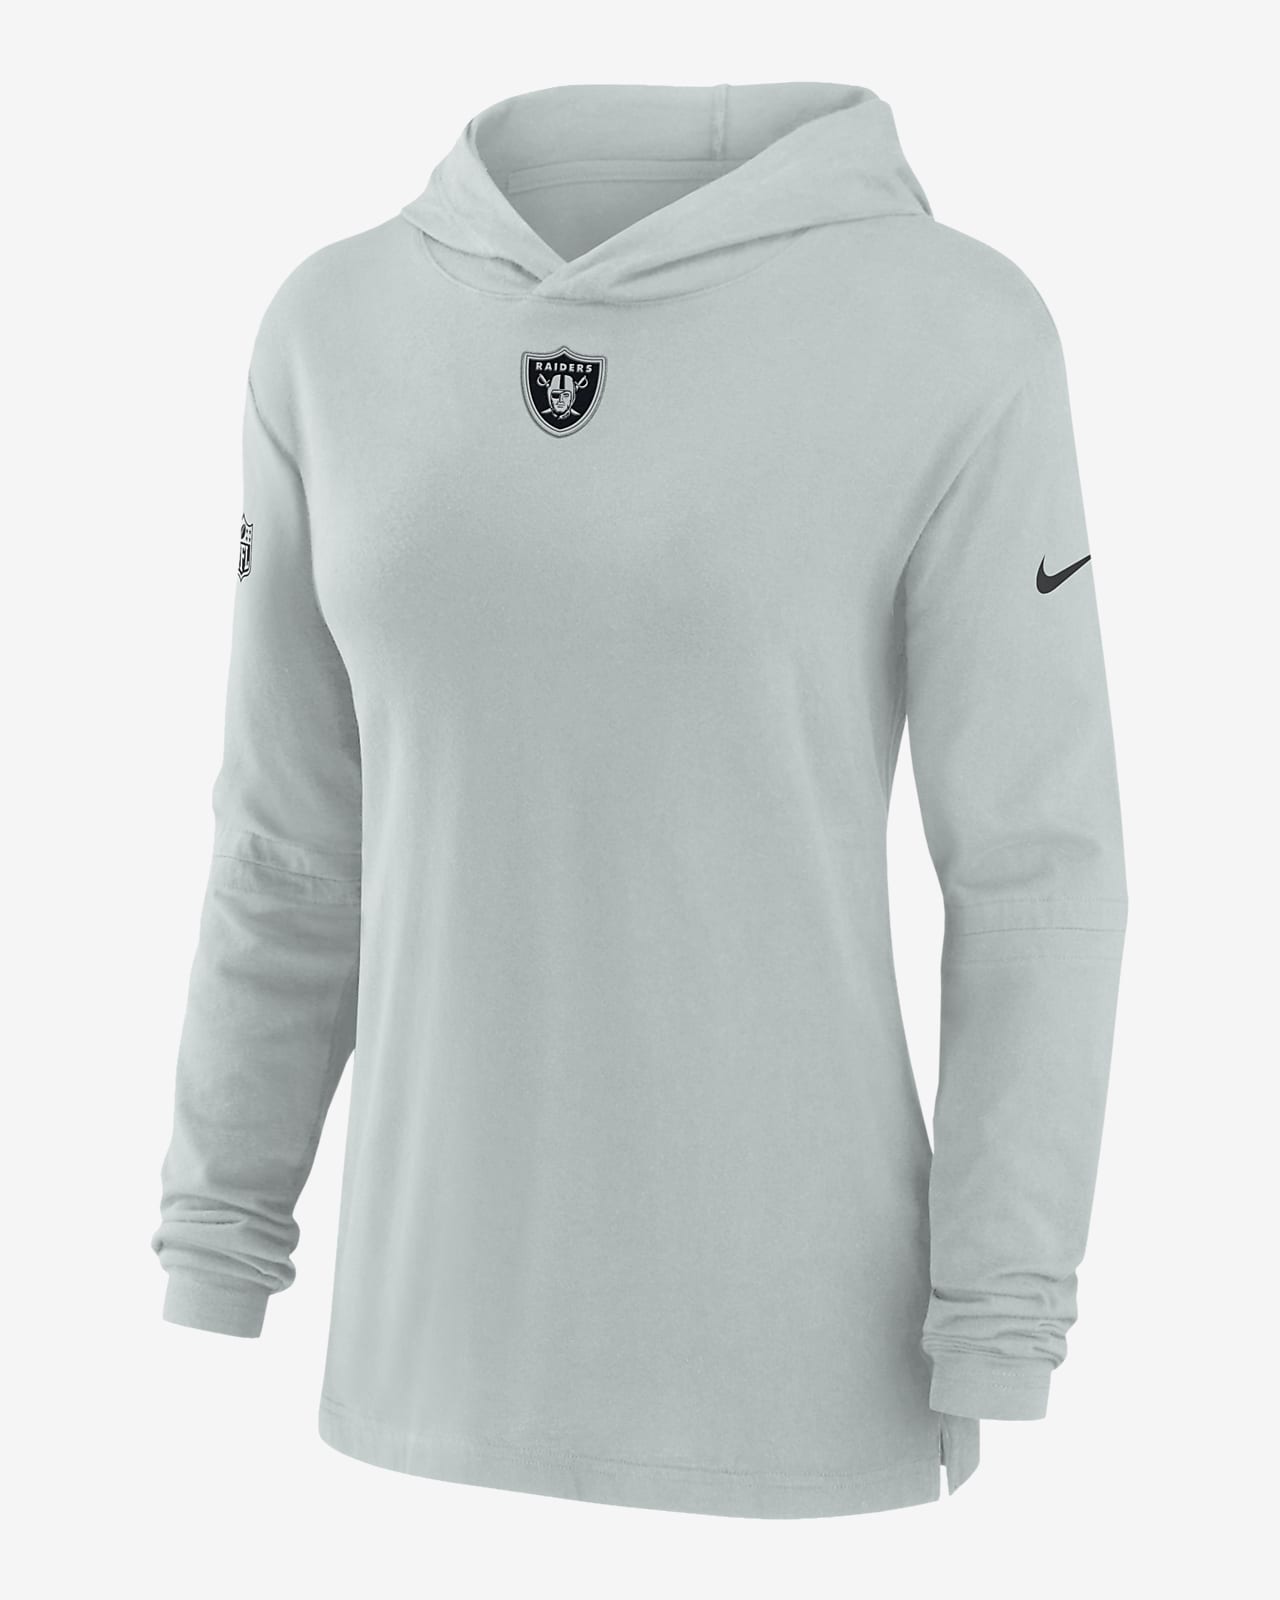 Nike Dri-FIT Sideline (NFL Las Vegas Raiders) Women's Long-Sleeve Hooded Top